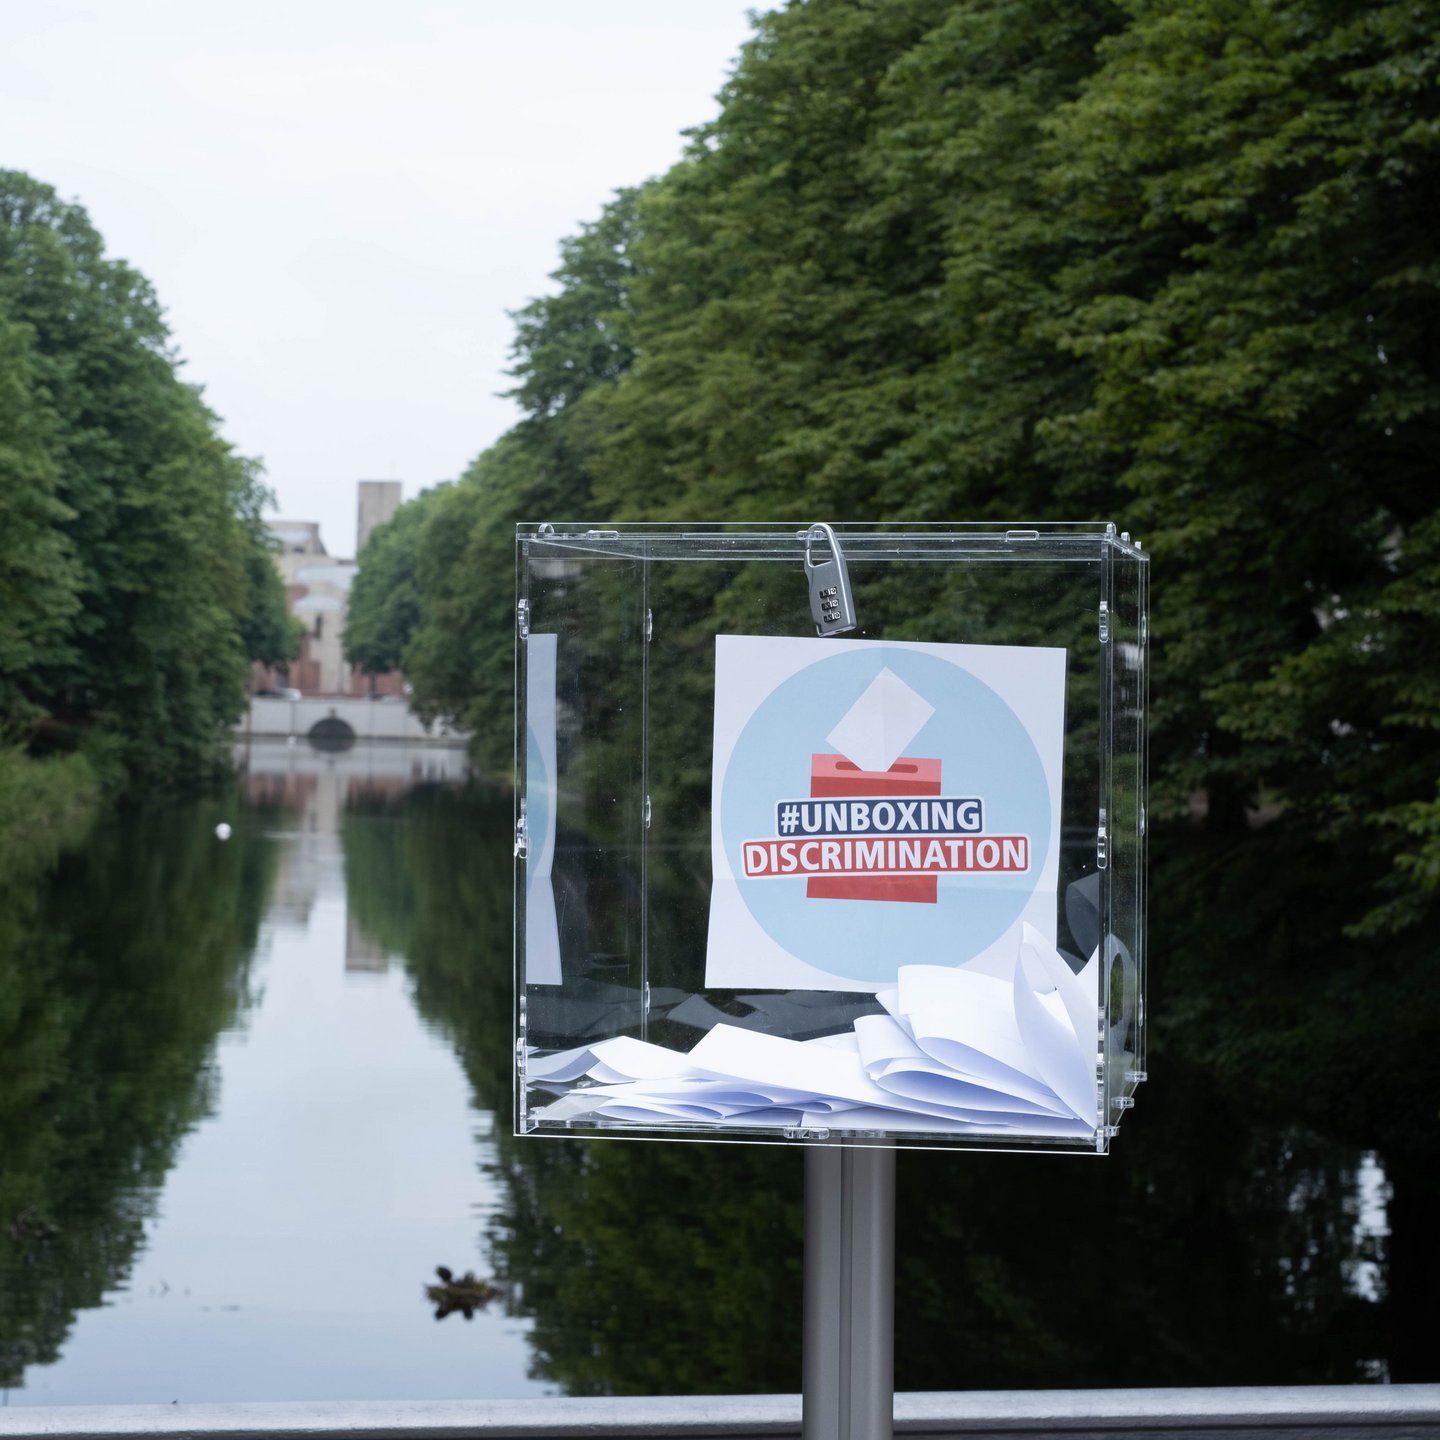 Eine durchsichtige Plexiglasbox auf einem Ständer steht am Clarenbachkanal an der Humanwissenschaftlichen Fakultät der Uni Köln. In der Box ist das Logo der Kampagne #unboxingdiscrimination. Außerdem sind in der Box einige weiße Zettel gesammelt.